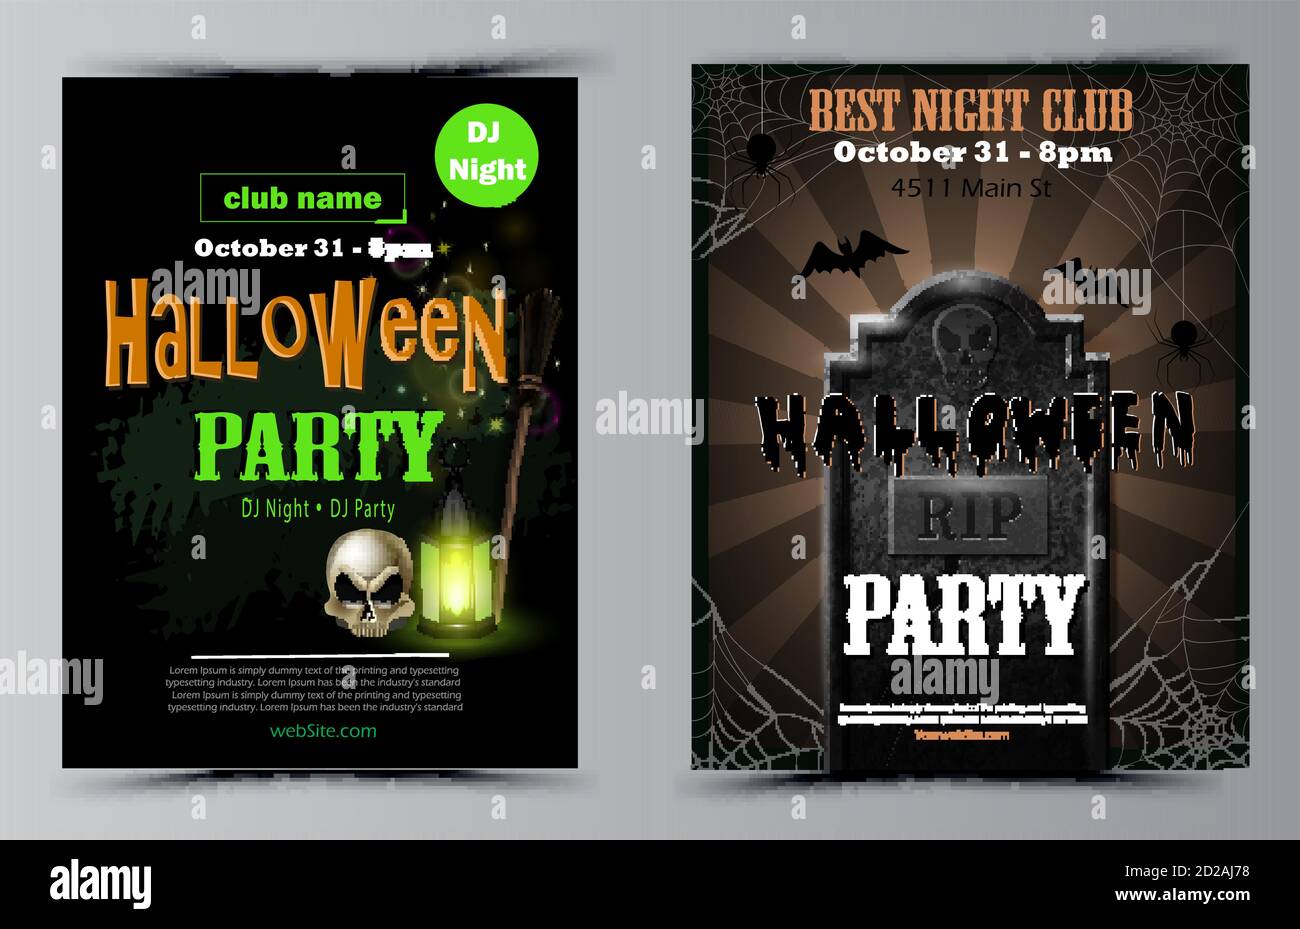 Halloween party flyer set vector Stock Vector Image & Art - Alamy